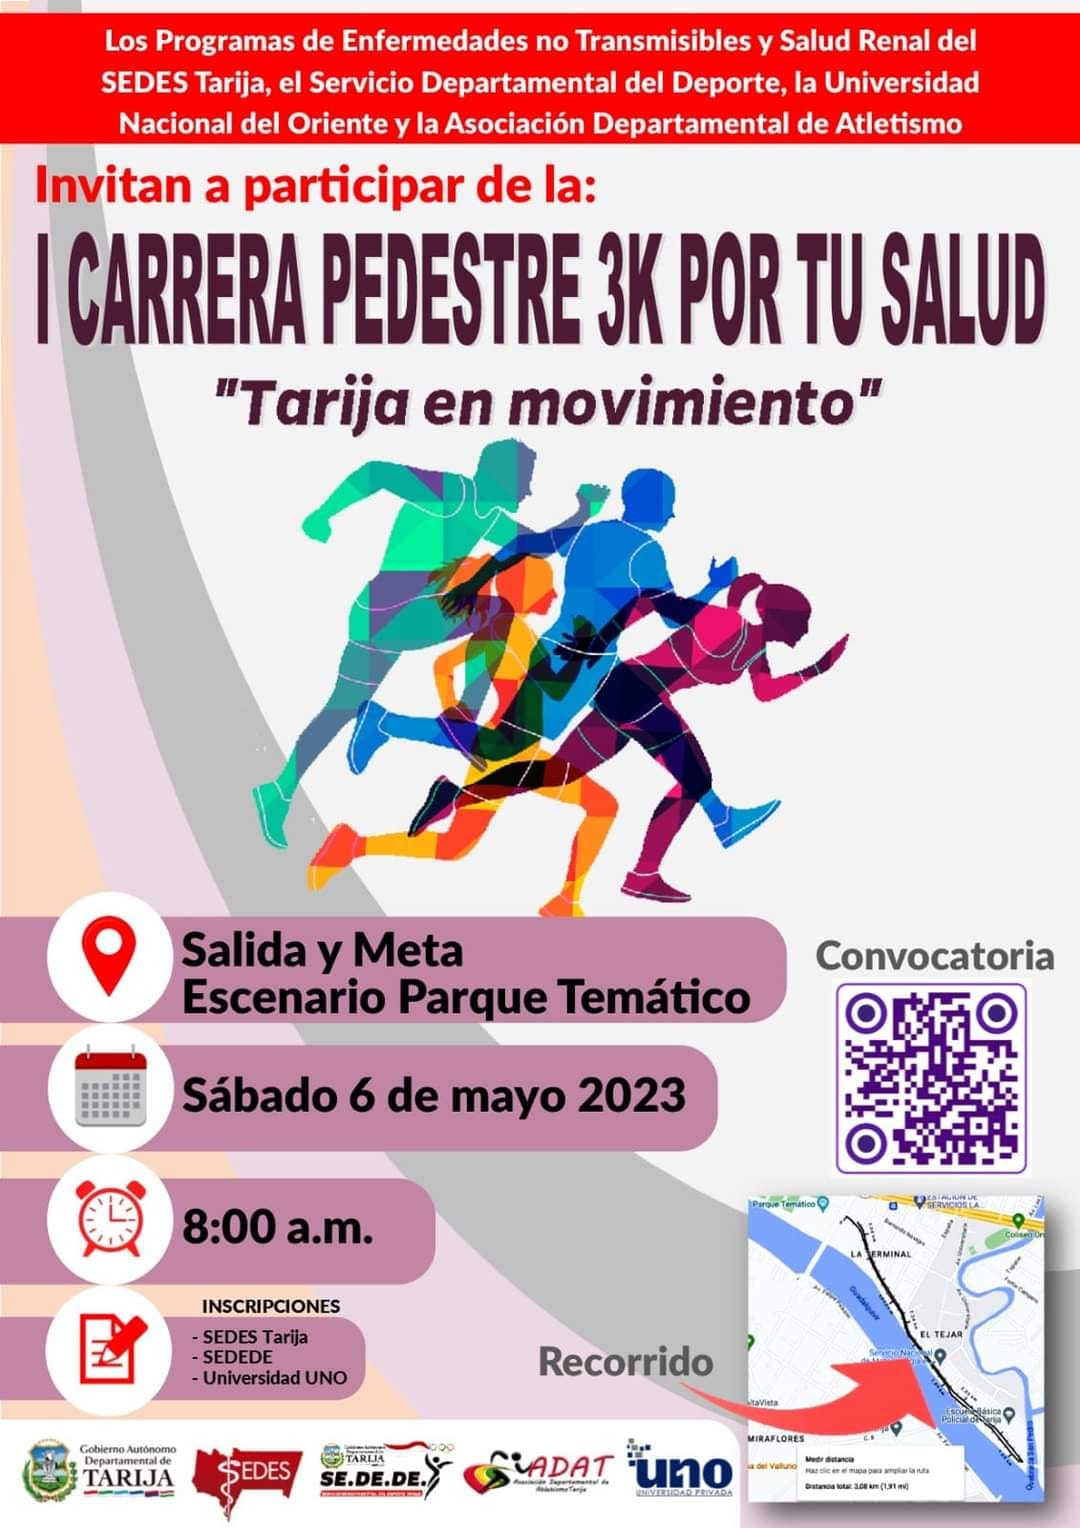 Carrera Pedestre Por tu Salud - Tarija en Movimiento